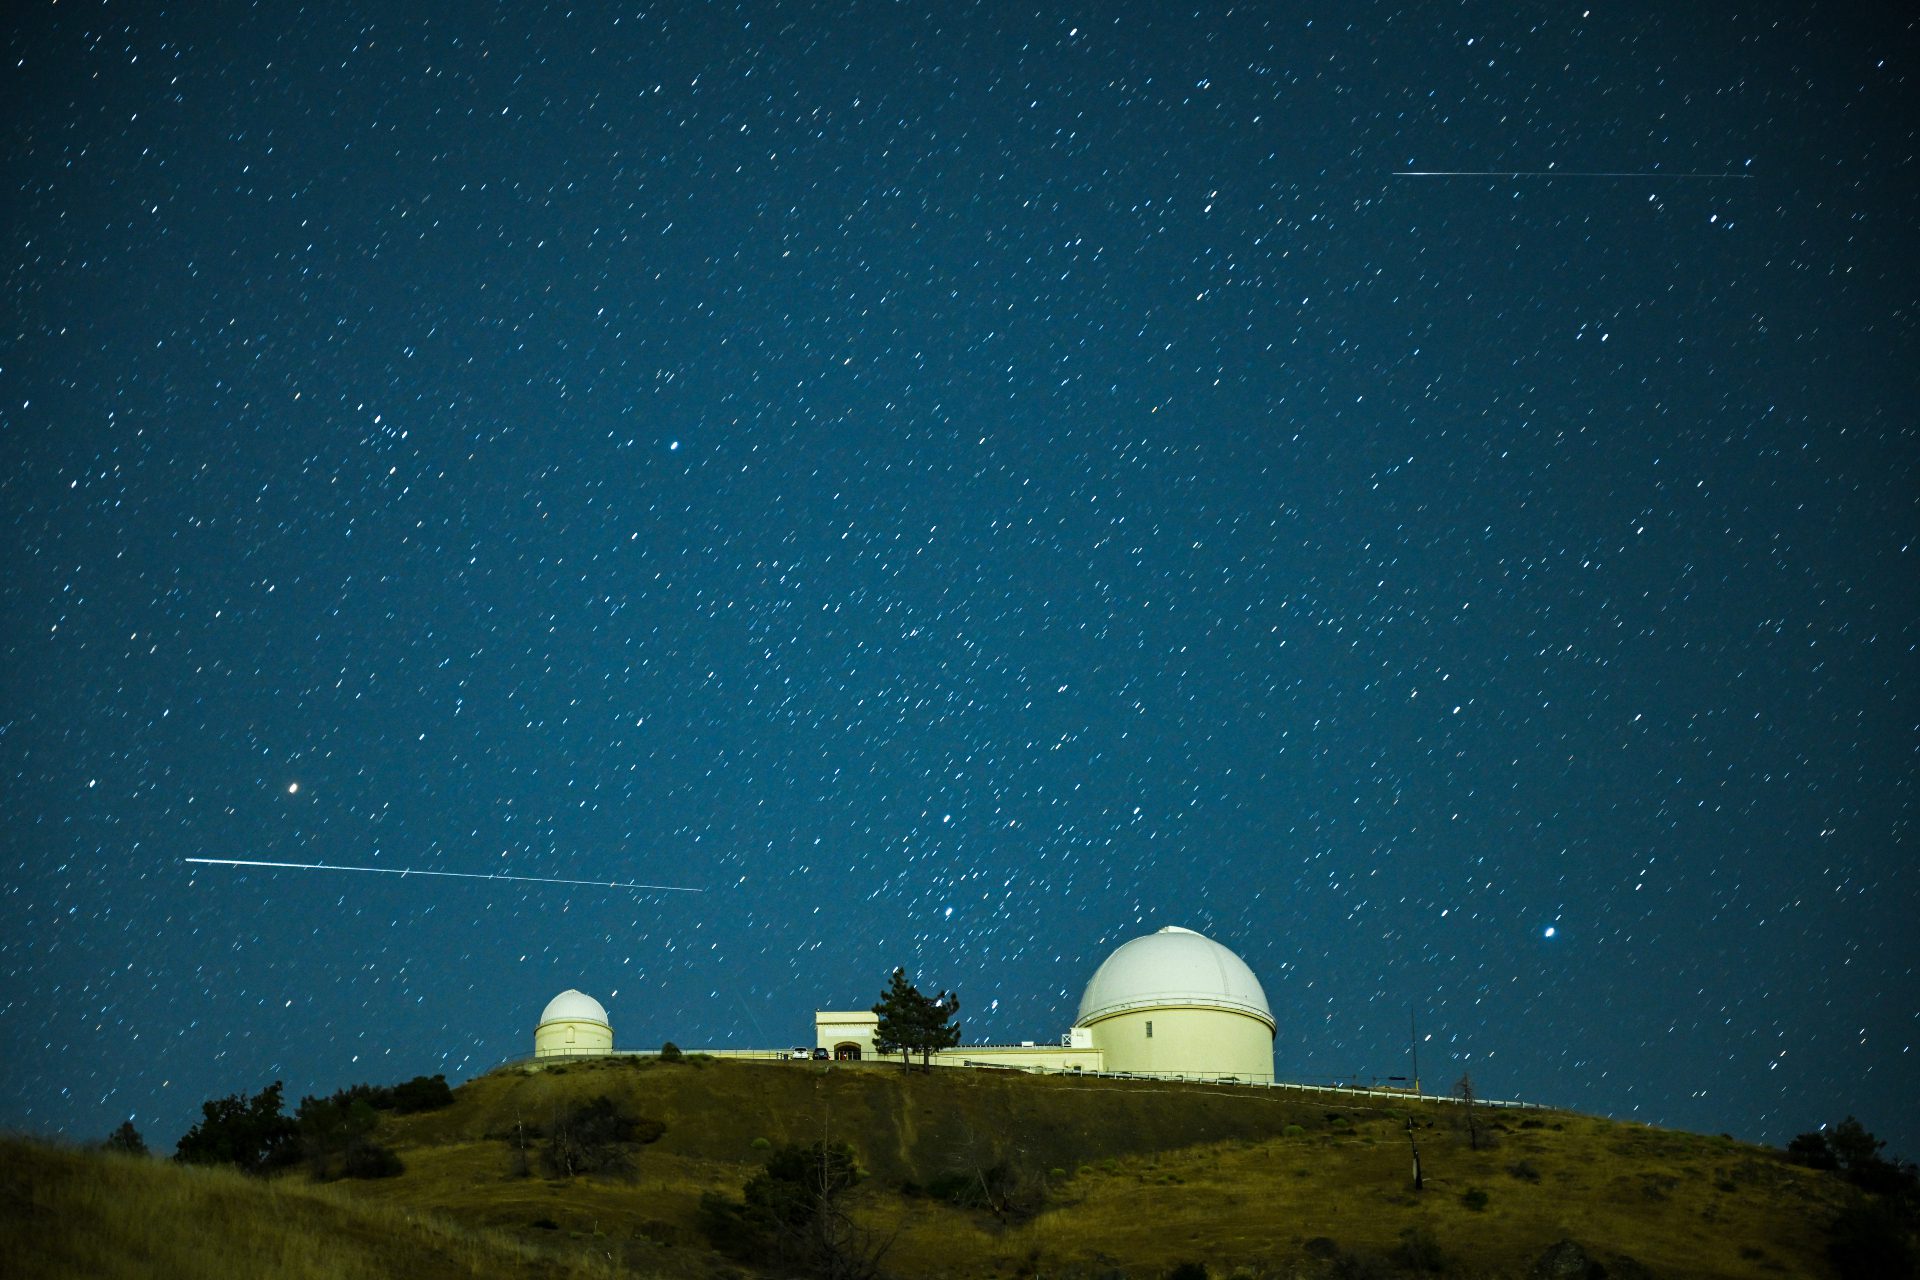 Kereta putih panjang meteor Perseid melewati struktur kubah Observatorium Danau dalam arah horizontal dengan latar langit berbintang.